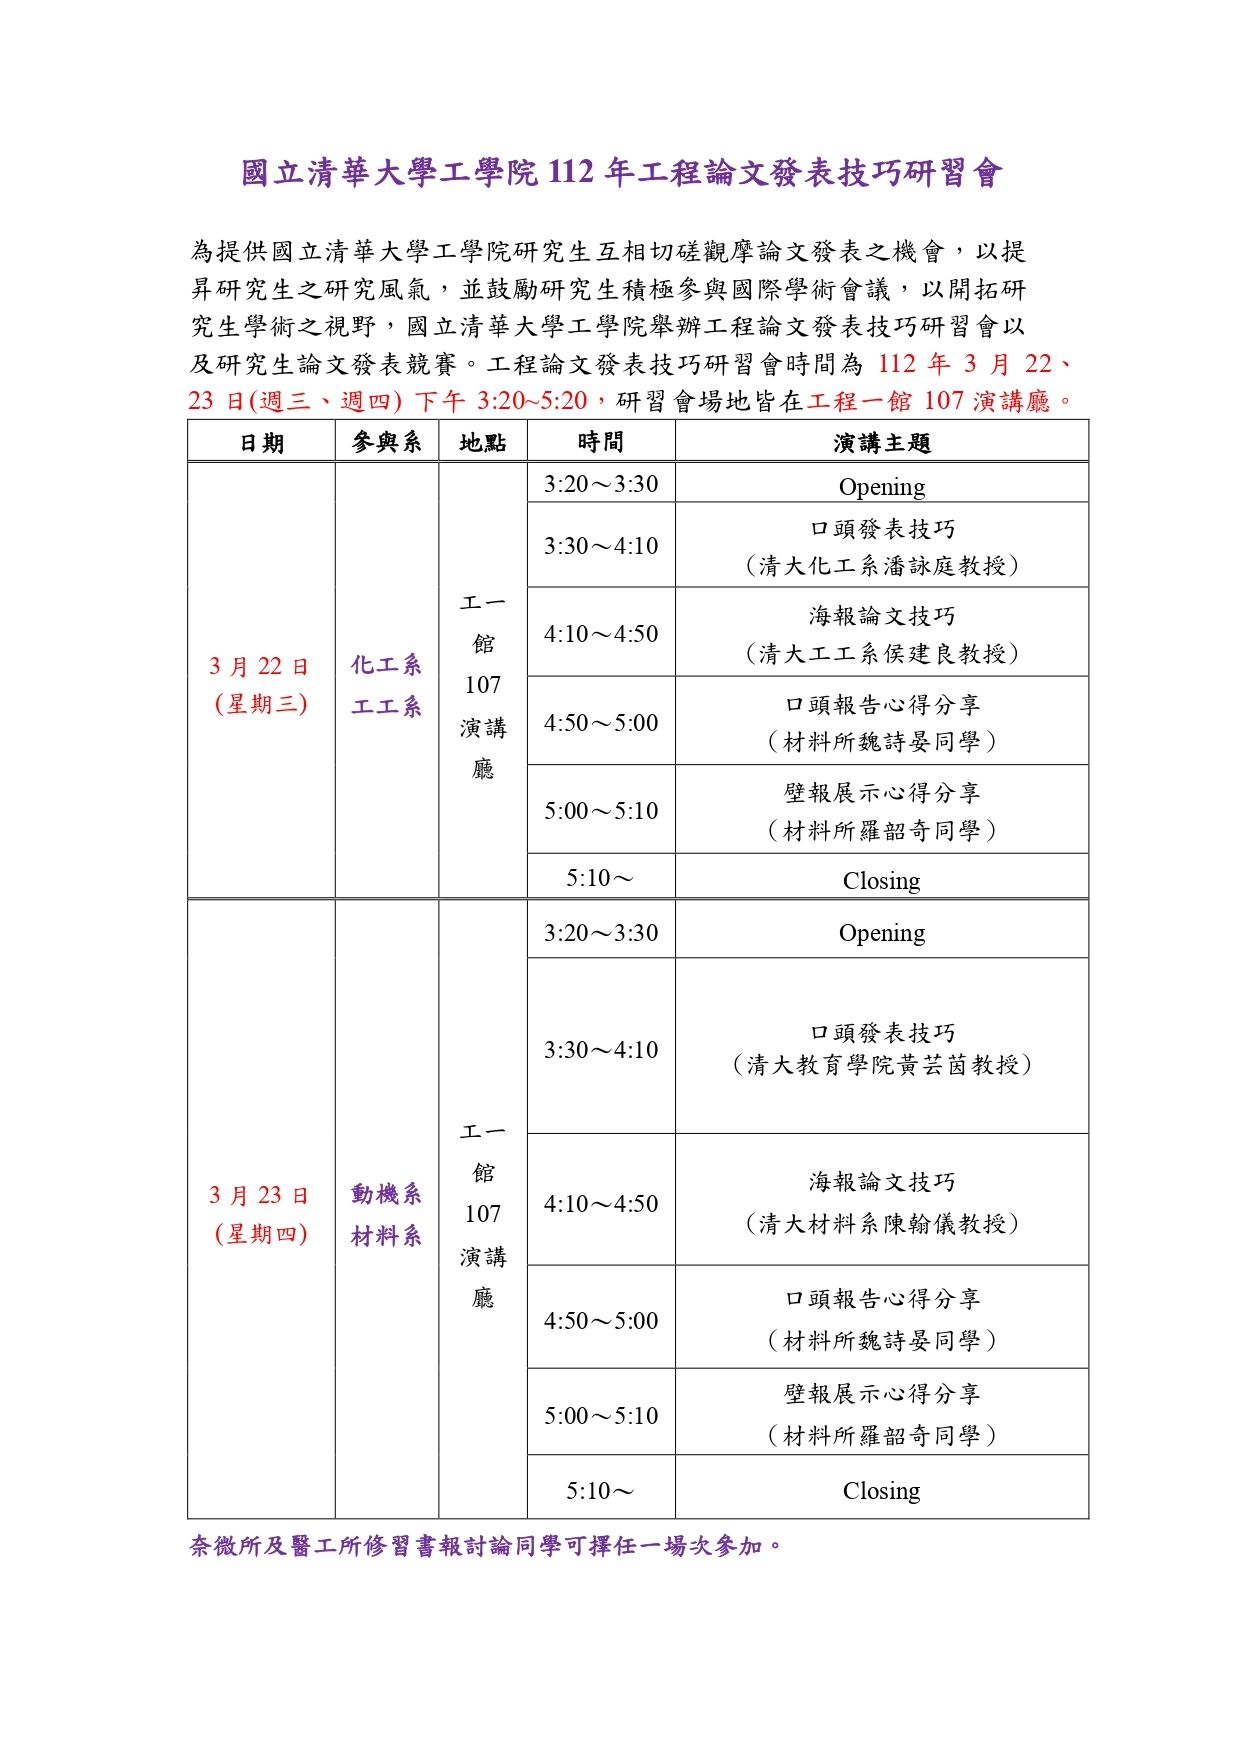 0323清大工學院工程論文發表技巧研習會 _page-0001